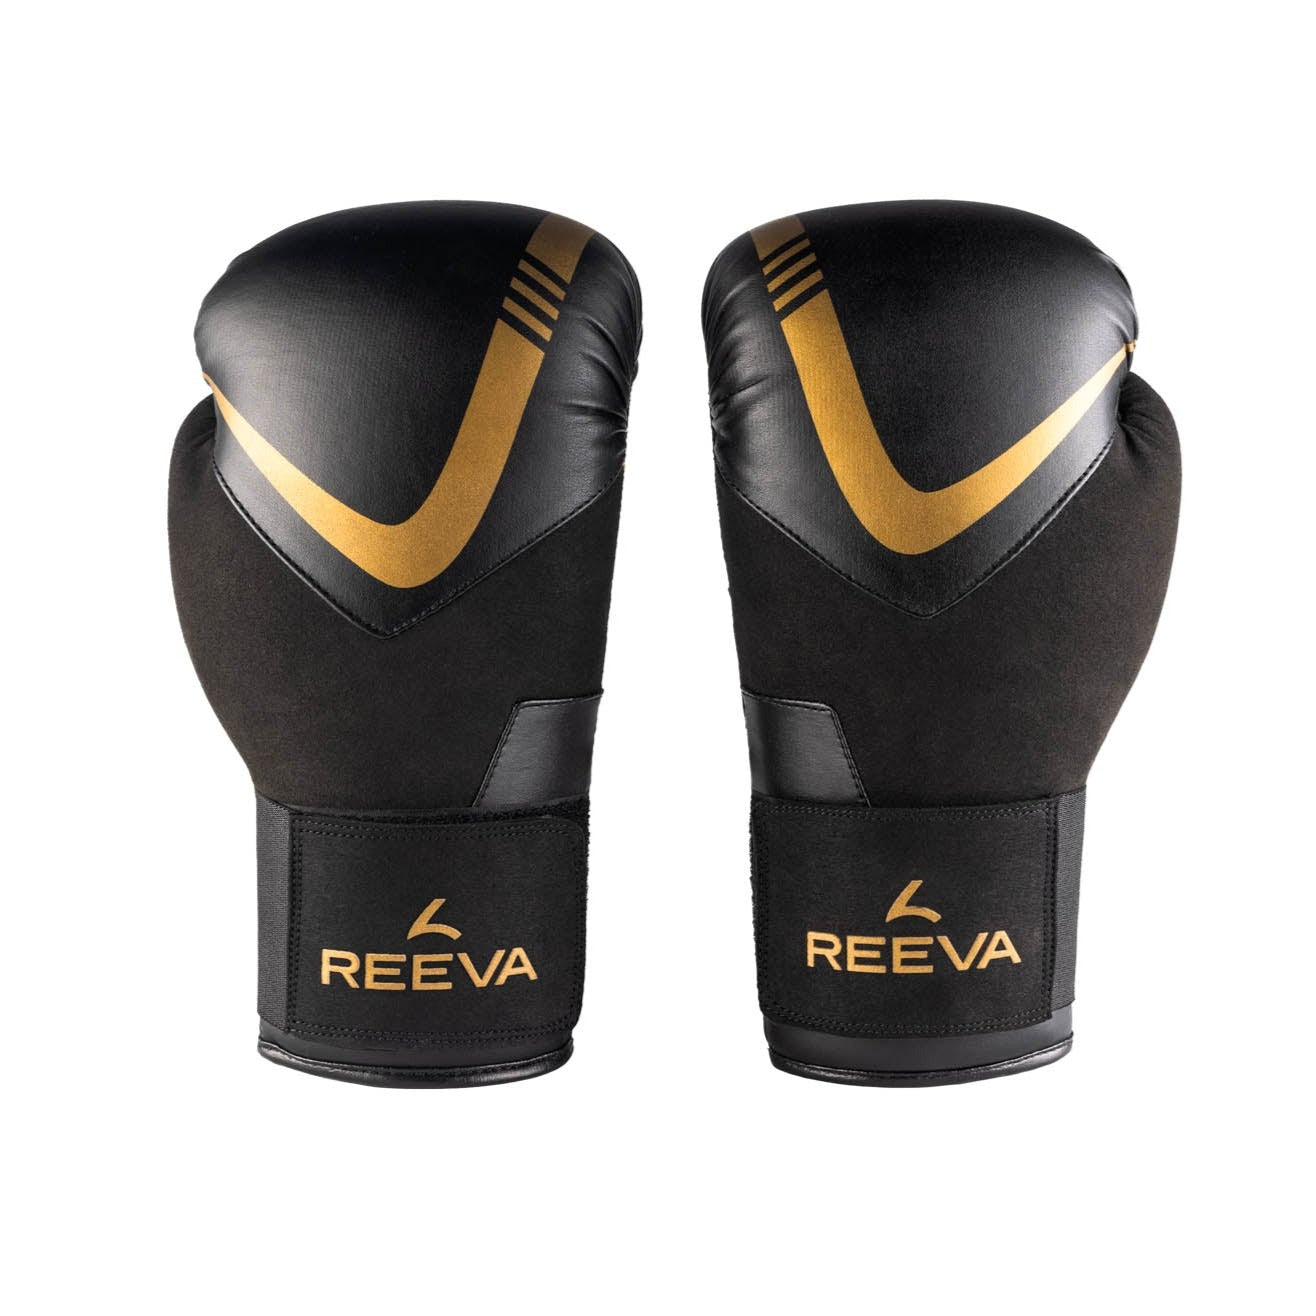 Reeva Boxhandschuhe Leder gold